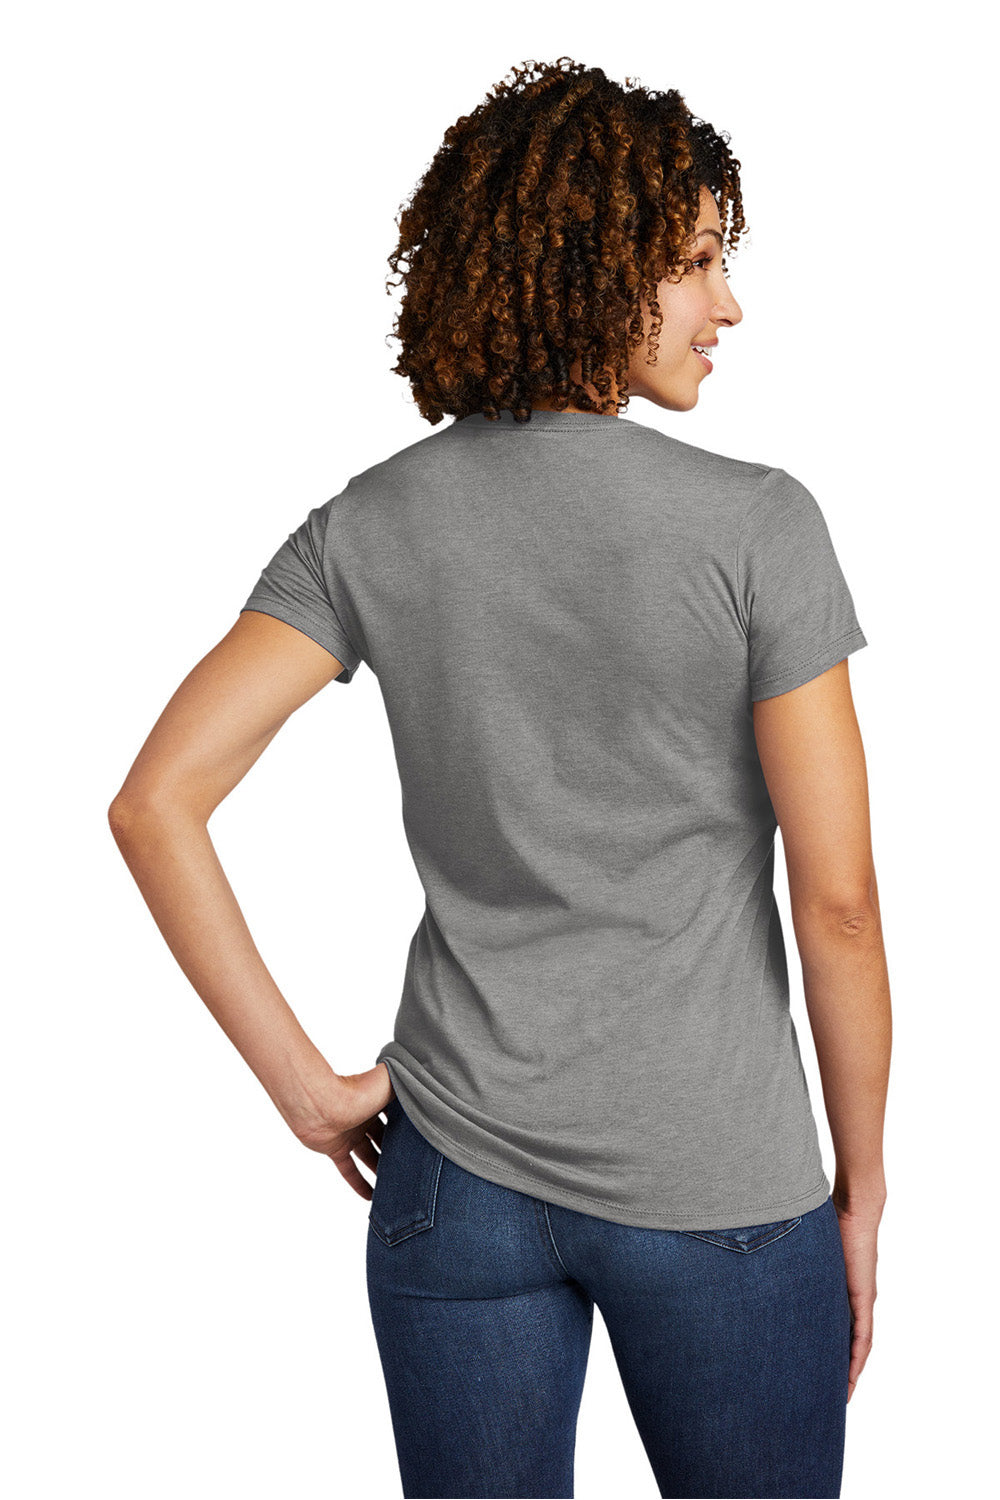 Allmade AL2018 Womens Short Sleeve V-Neck T-Shirt Aluminum Grey Model Back